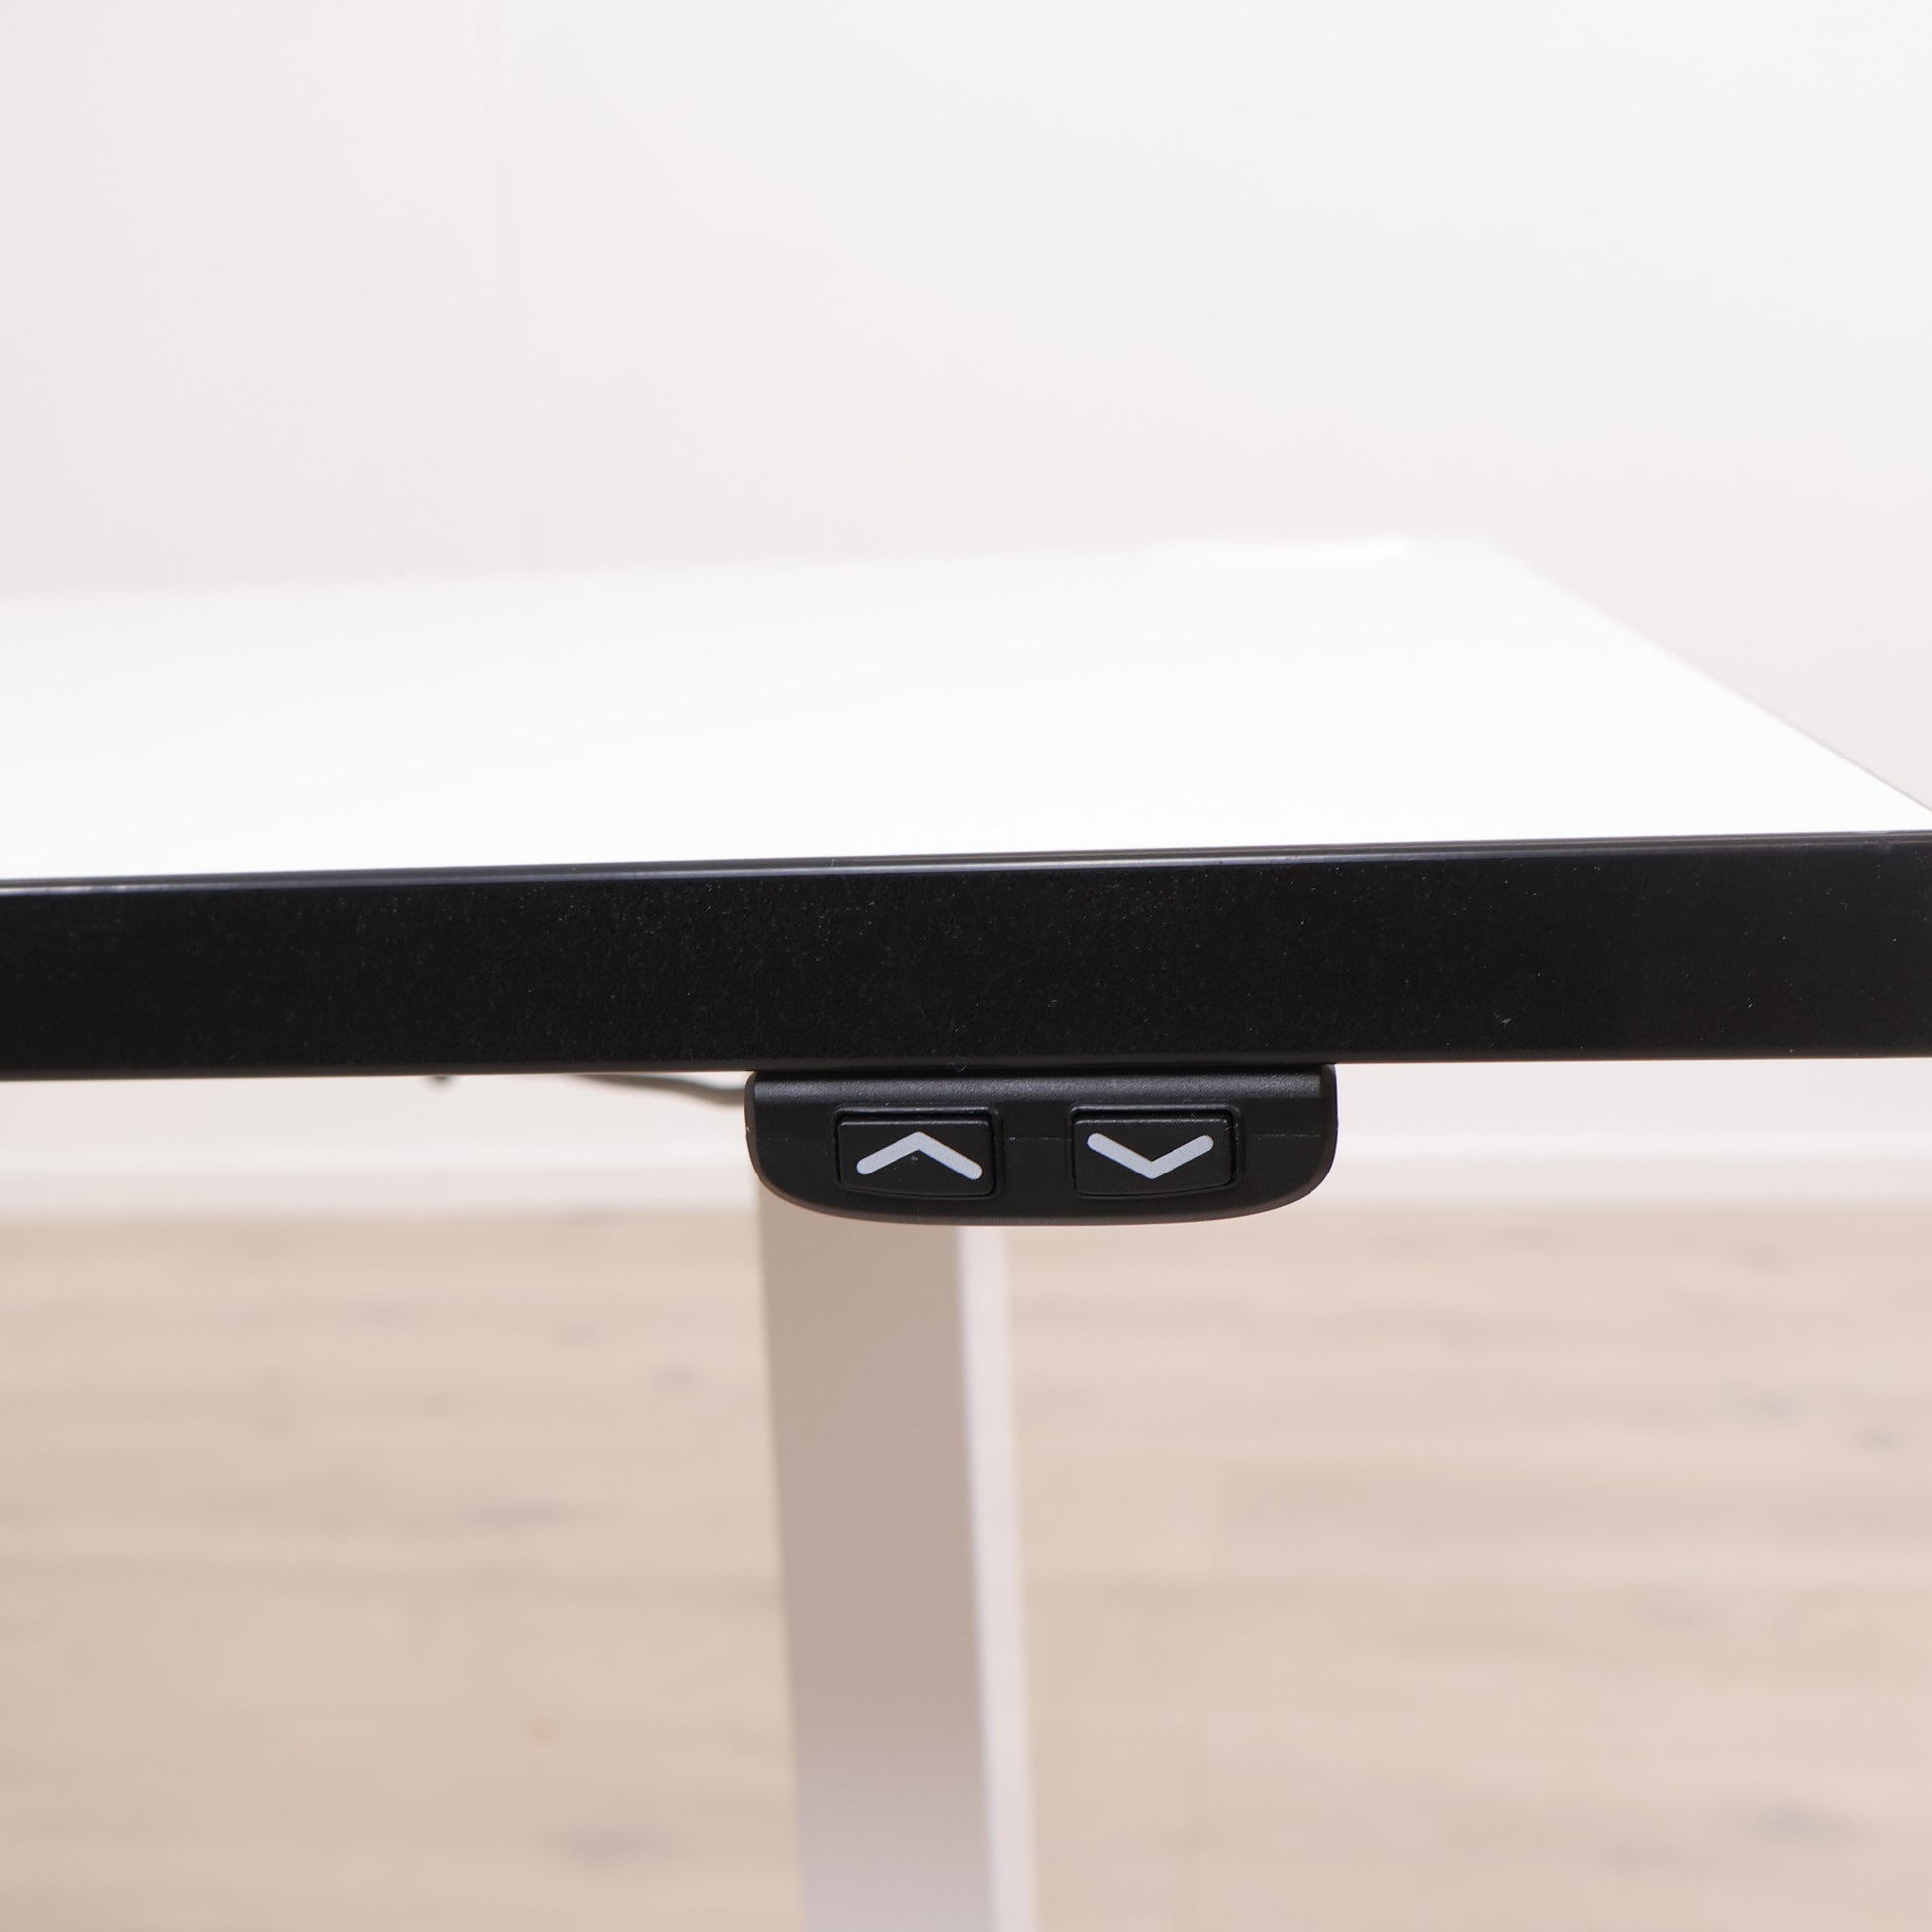 TiMotion elektrisk hev/senk skrivebord med sort kant på bordplaten. 140 x 70 cm